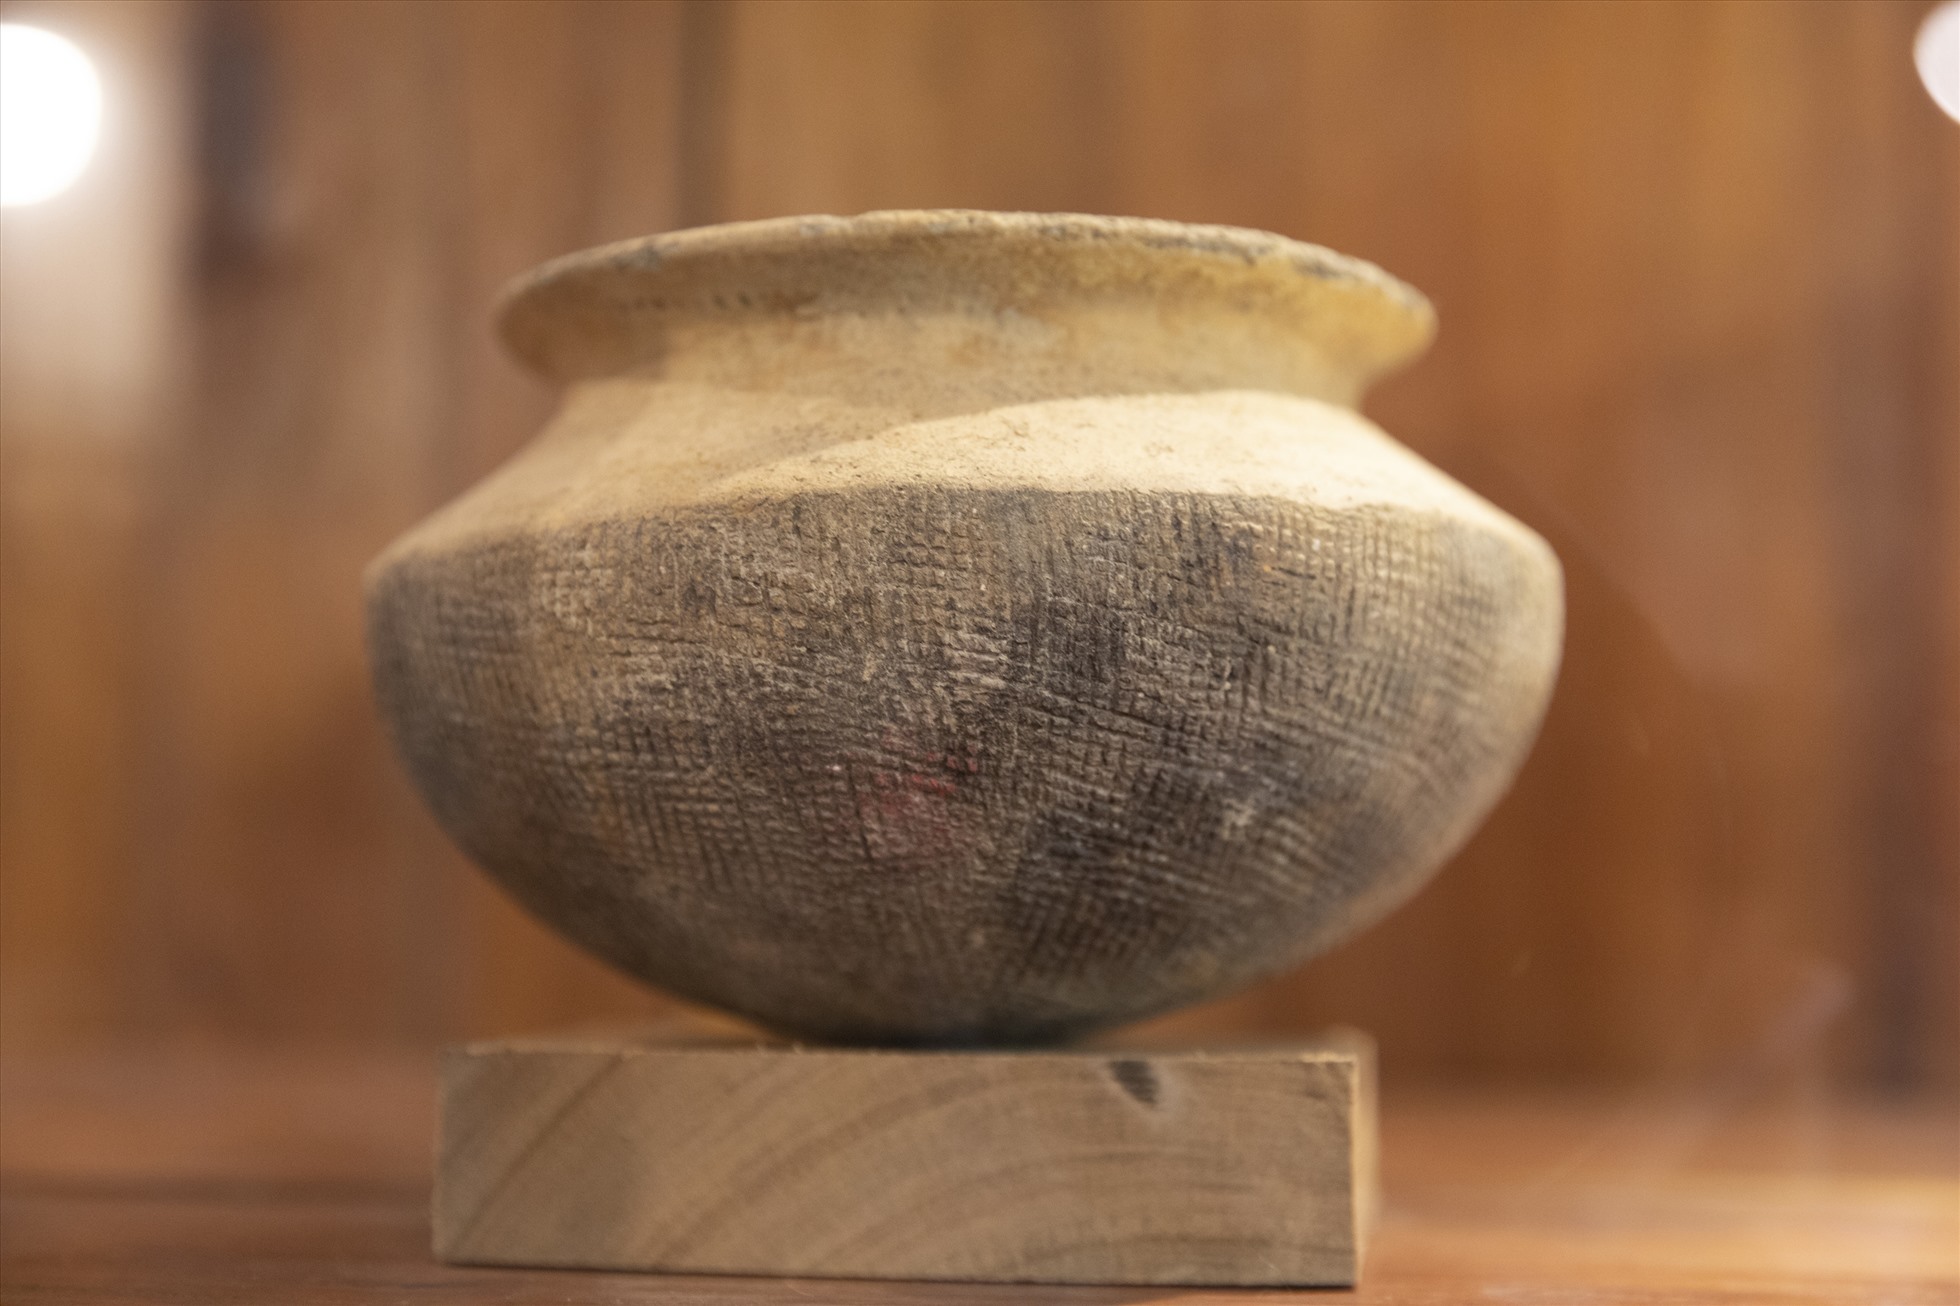 Đồ gốm văn hoá Sa Huỳnh, thế kỷ V trước công nguyên đến thế kỷ I, II sau công nguyên của nhà sưu tập Hồ Tấn Phan.